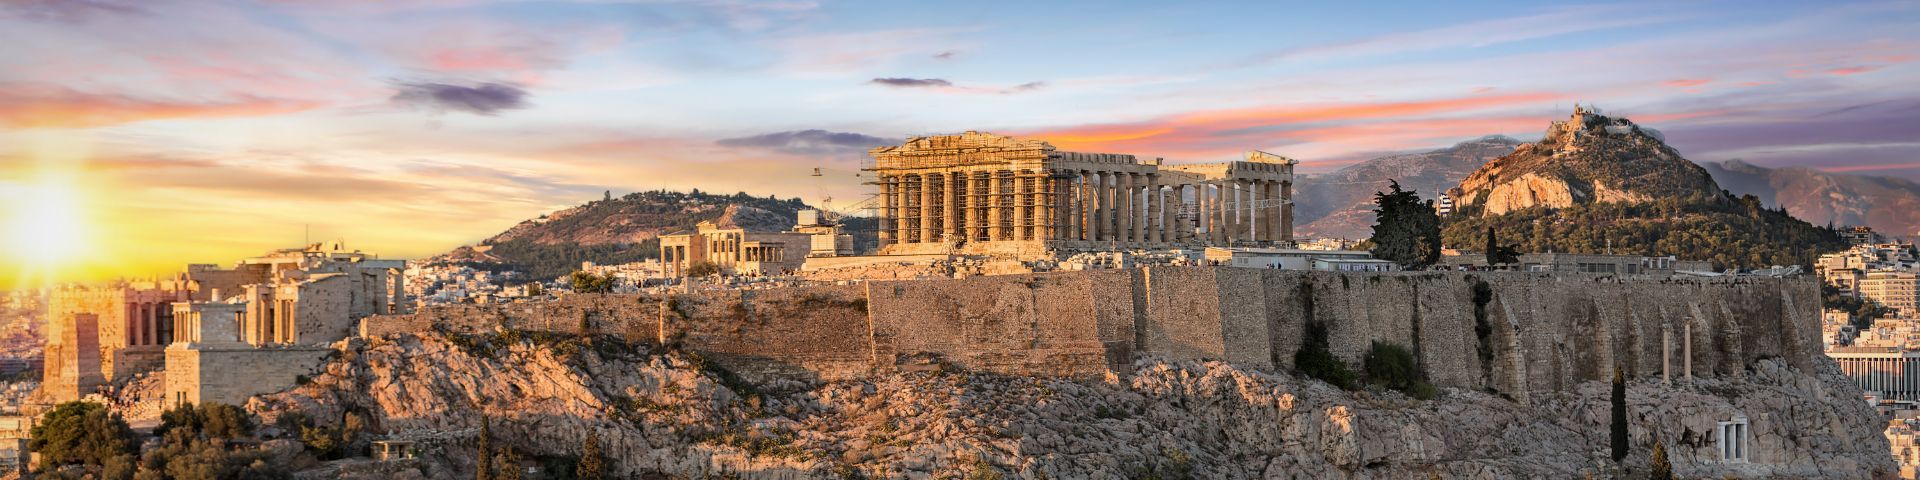 Akropolis im Sonnenuntergang bei einer Städtereise mit sz-Reisen